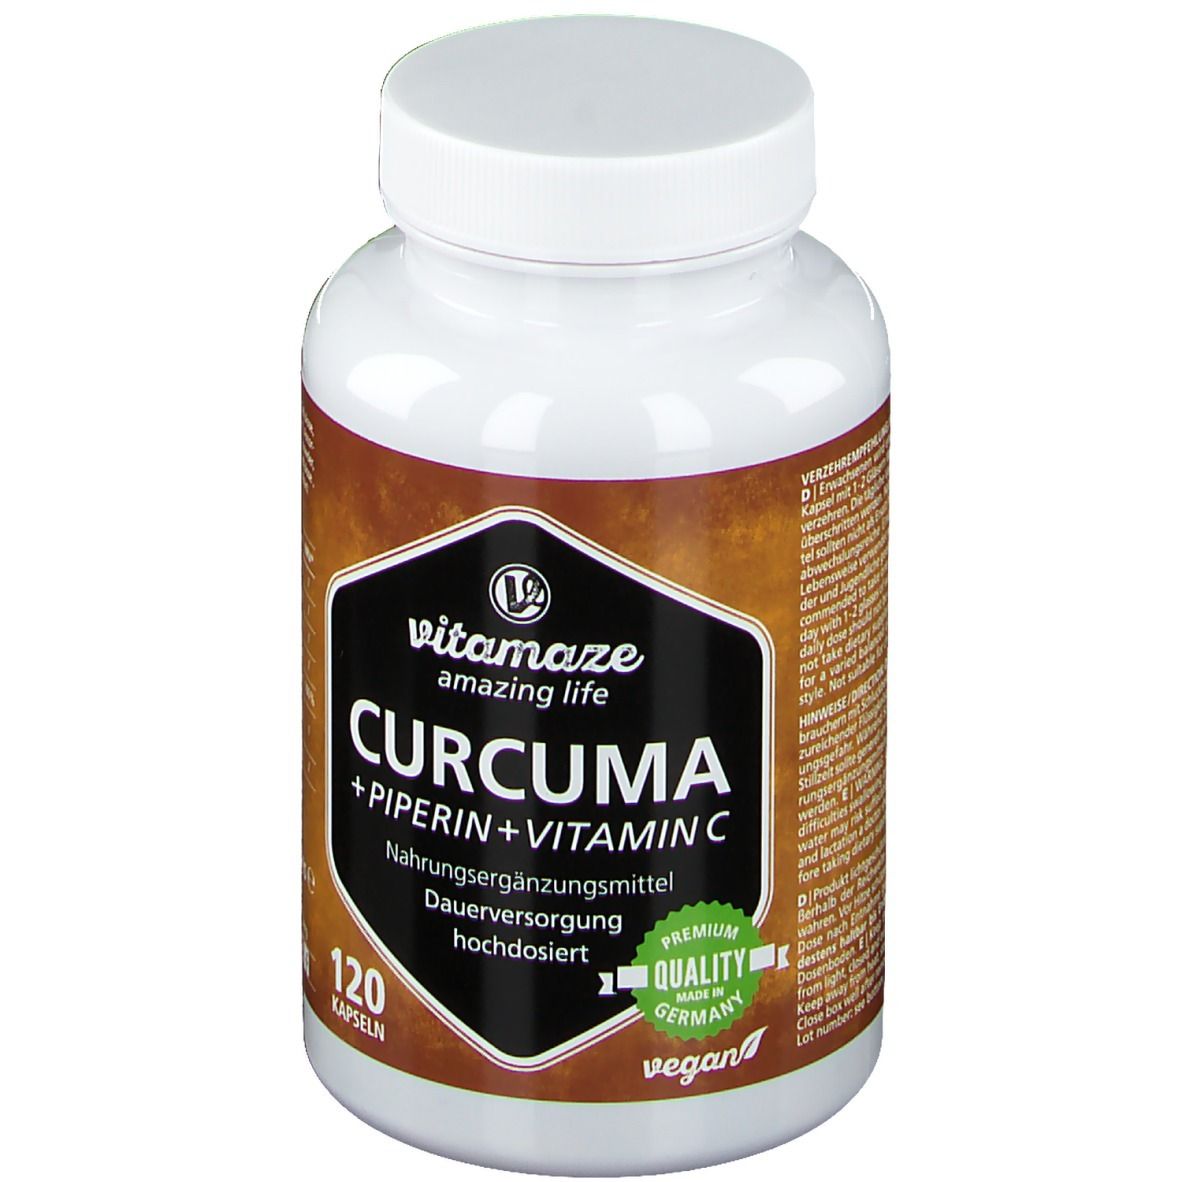 CURCUMA + PIPERIN + Vitamin C vegan